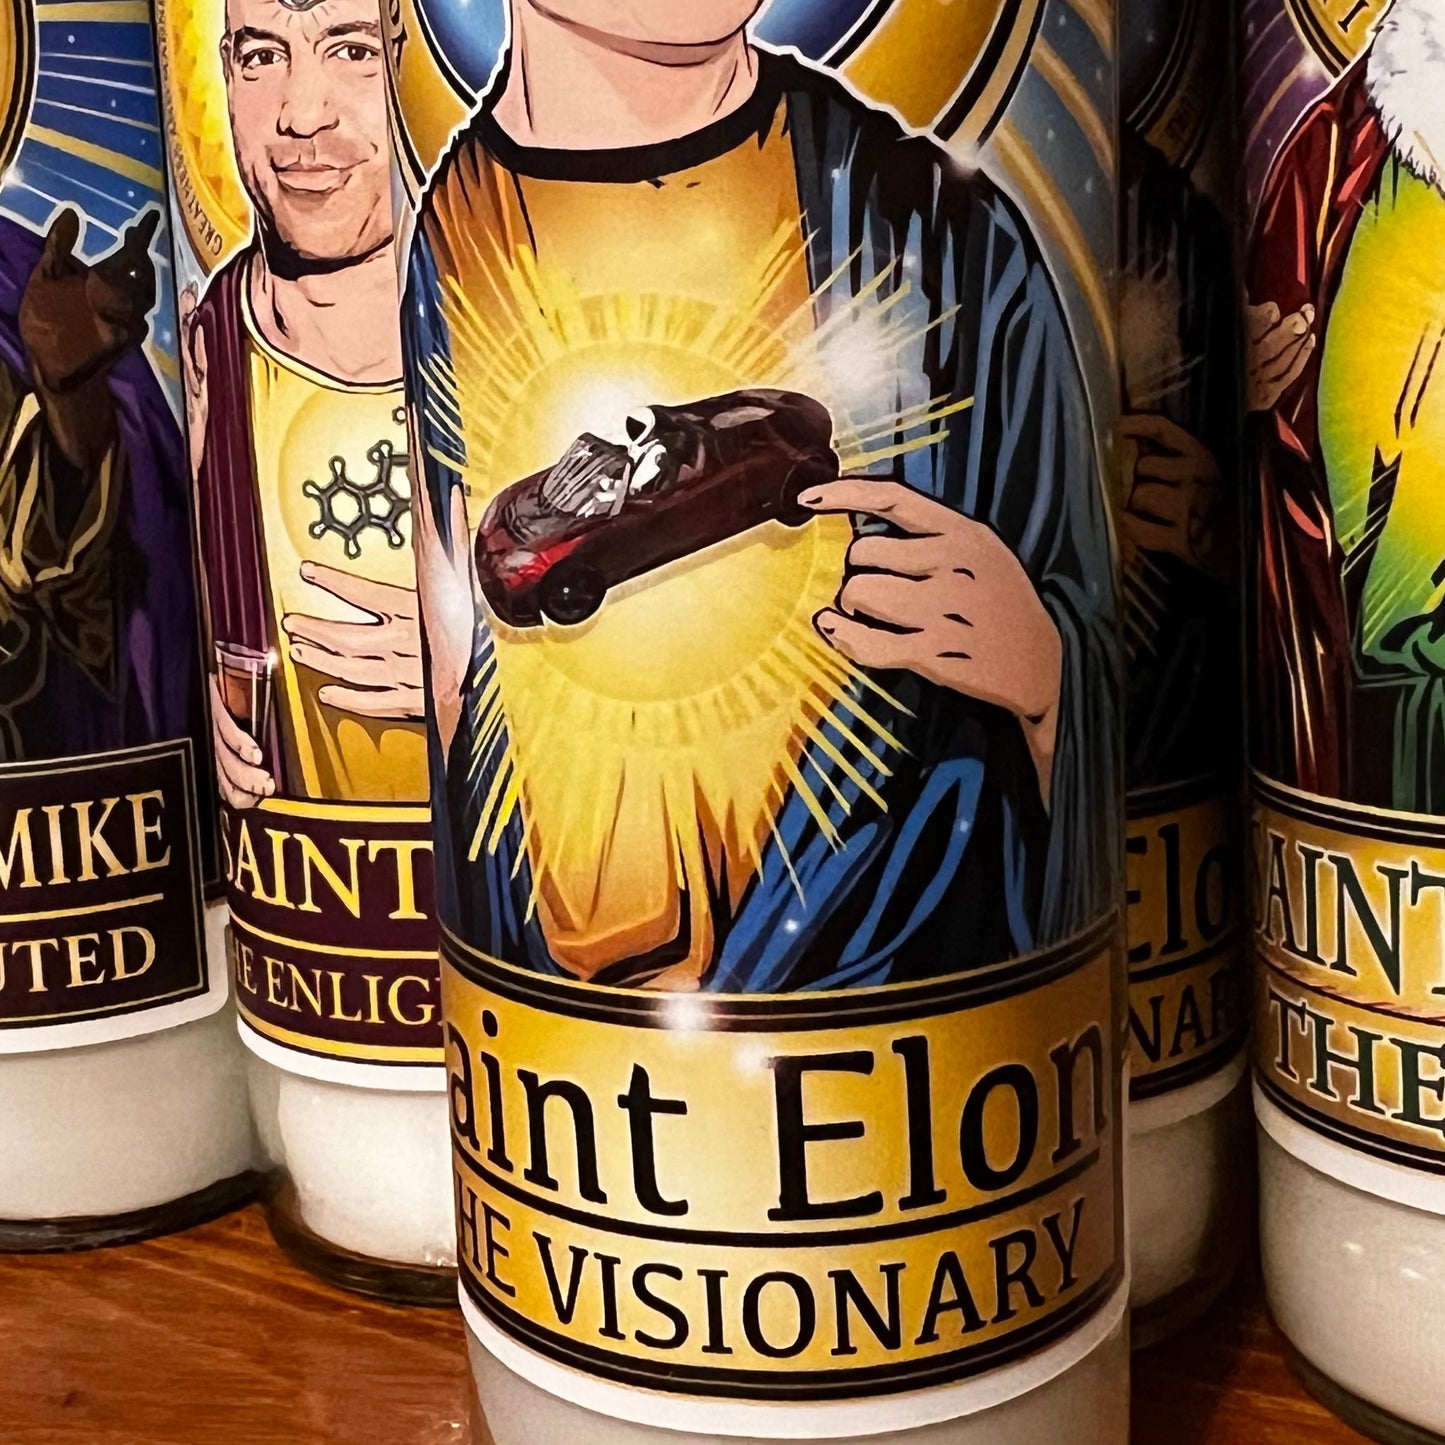 Saint Elon the Visionary Candle Cleaverandblade.com